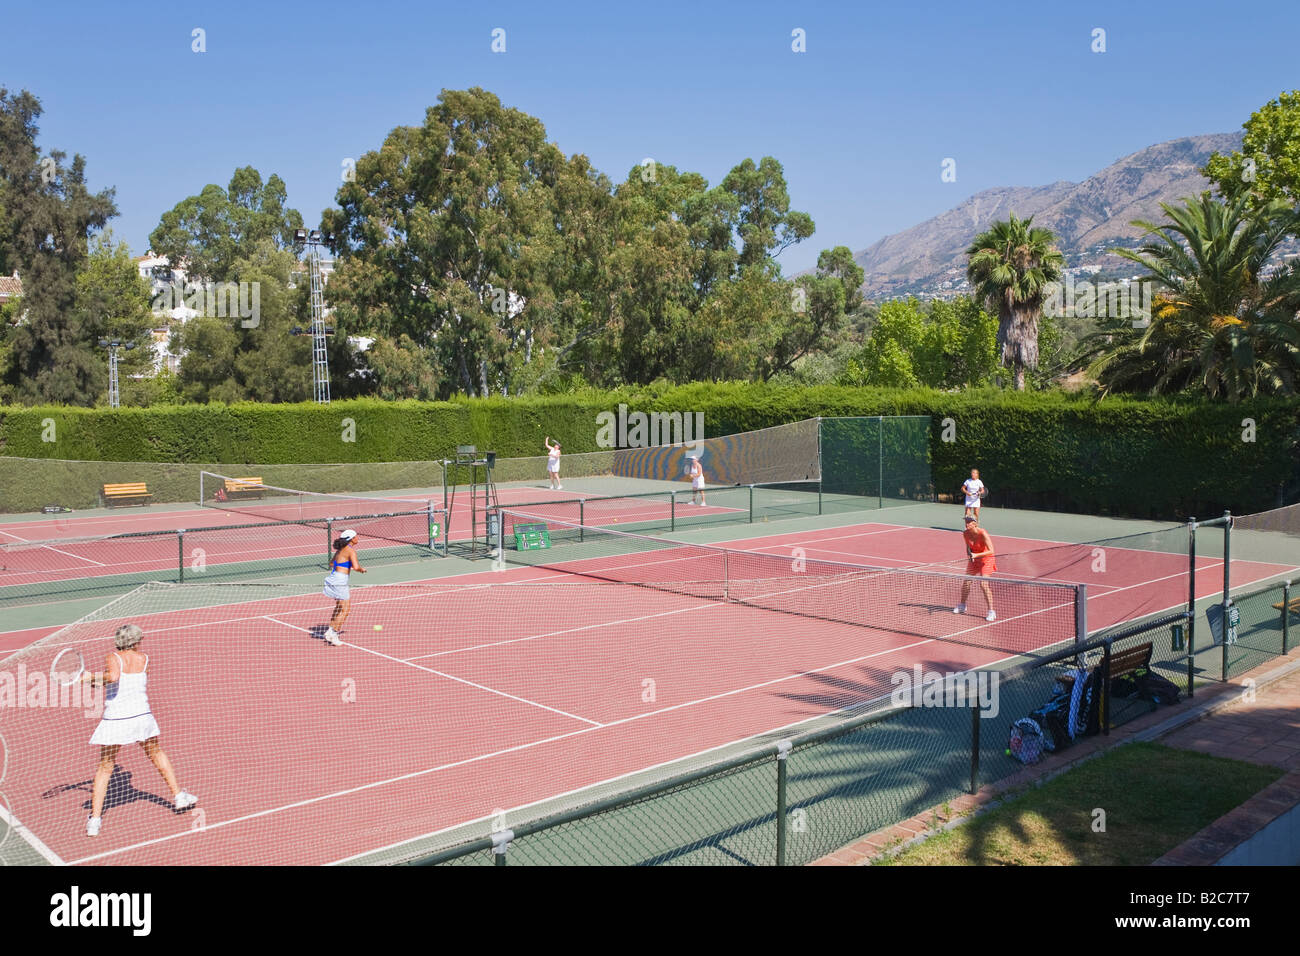 Mijas Málaga Provinz im Landesinneren Costa del Sol Spanien Lew Hoad s Tennis Ranch Campo de Tenis y Padel Stockfoto